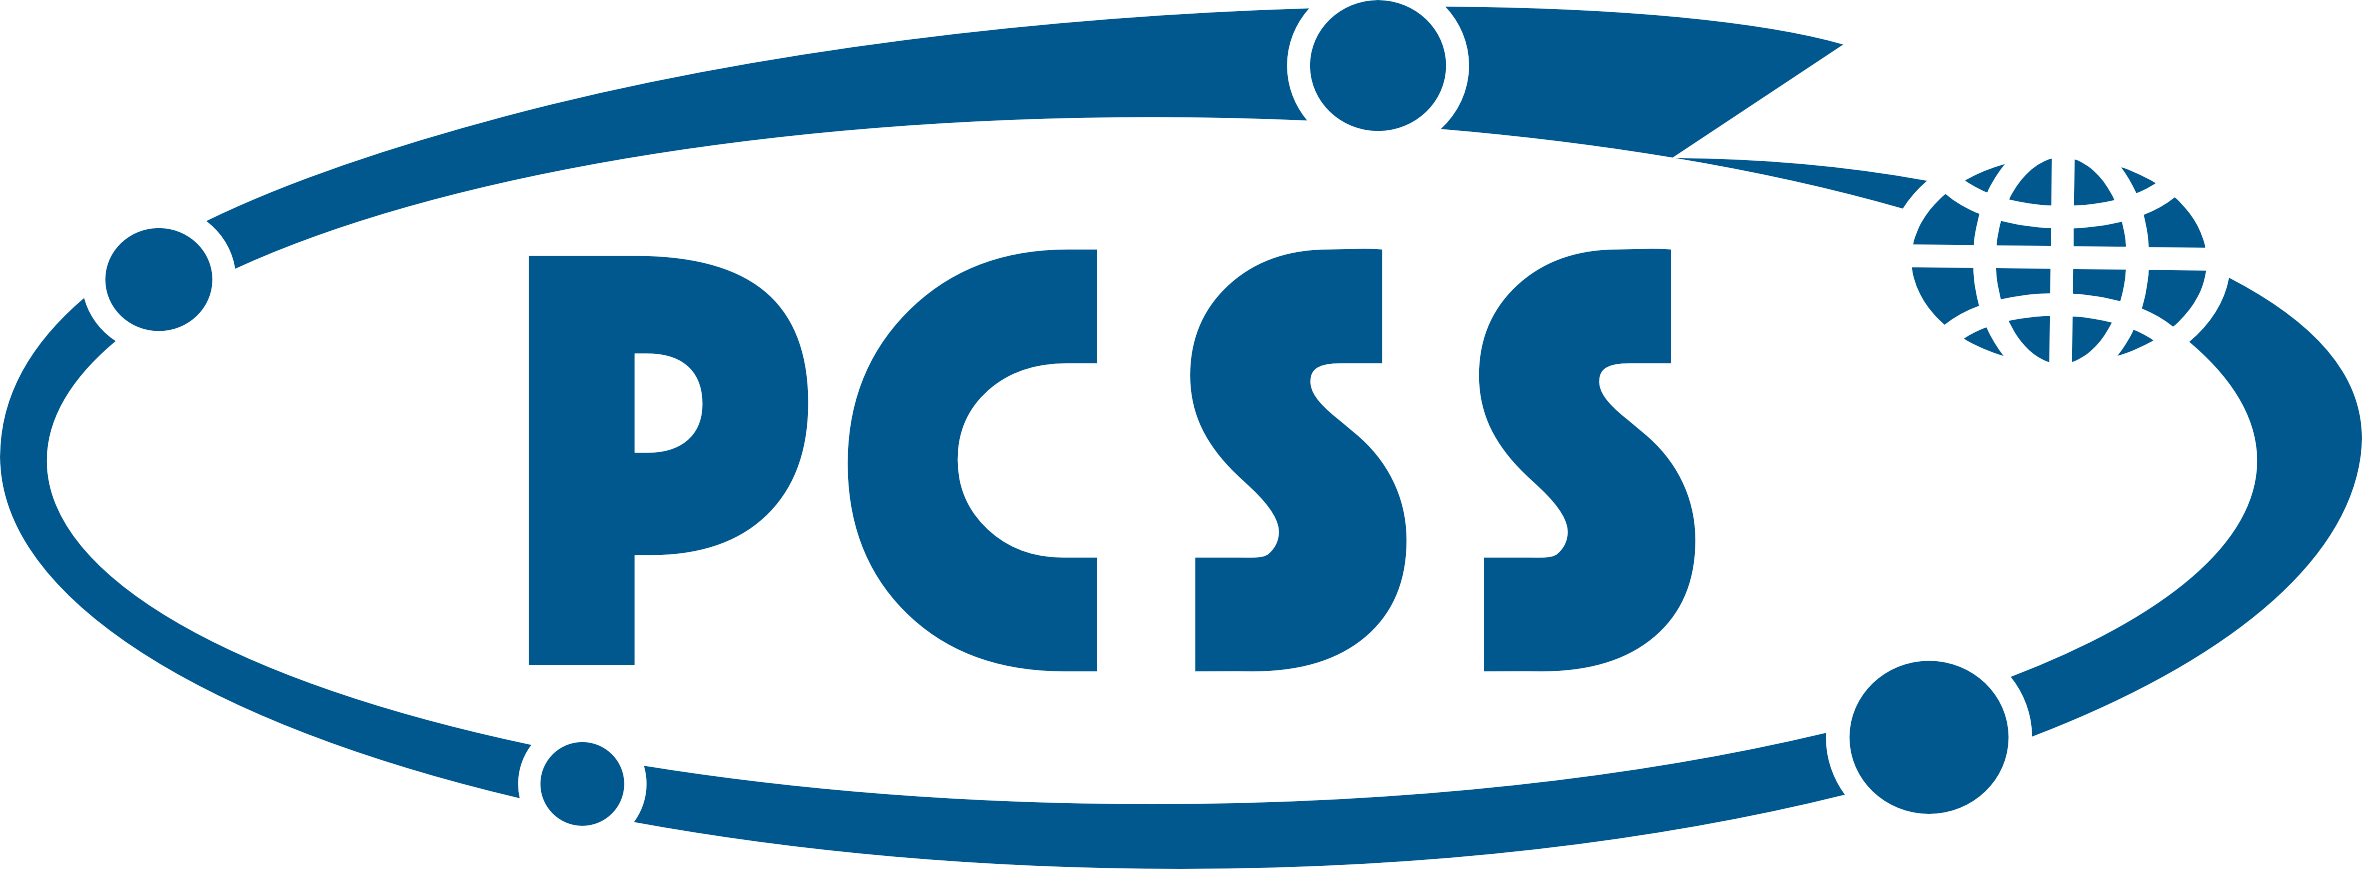 PCSS_logo_niebieskie_